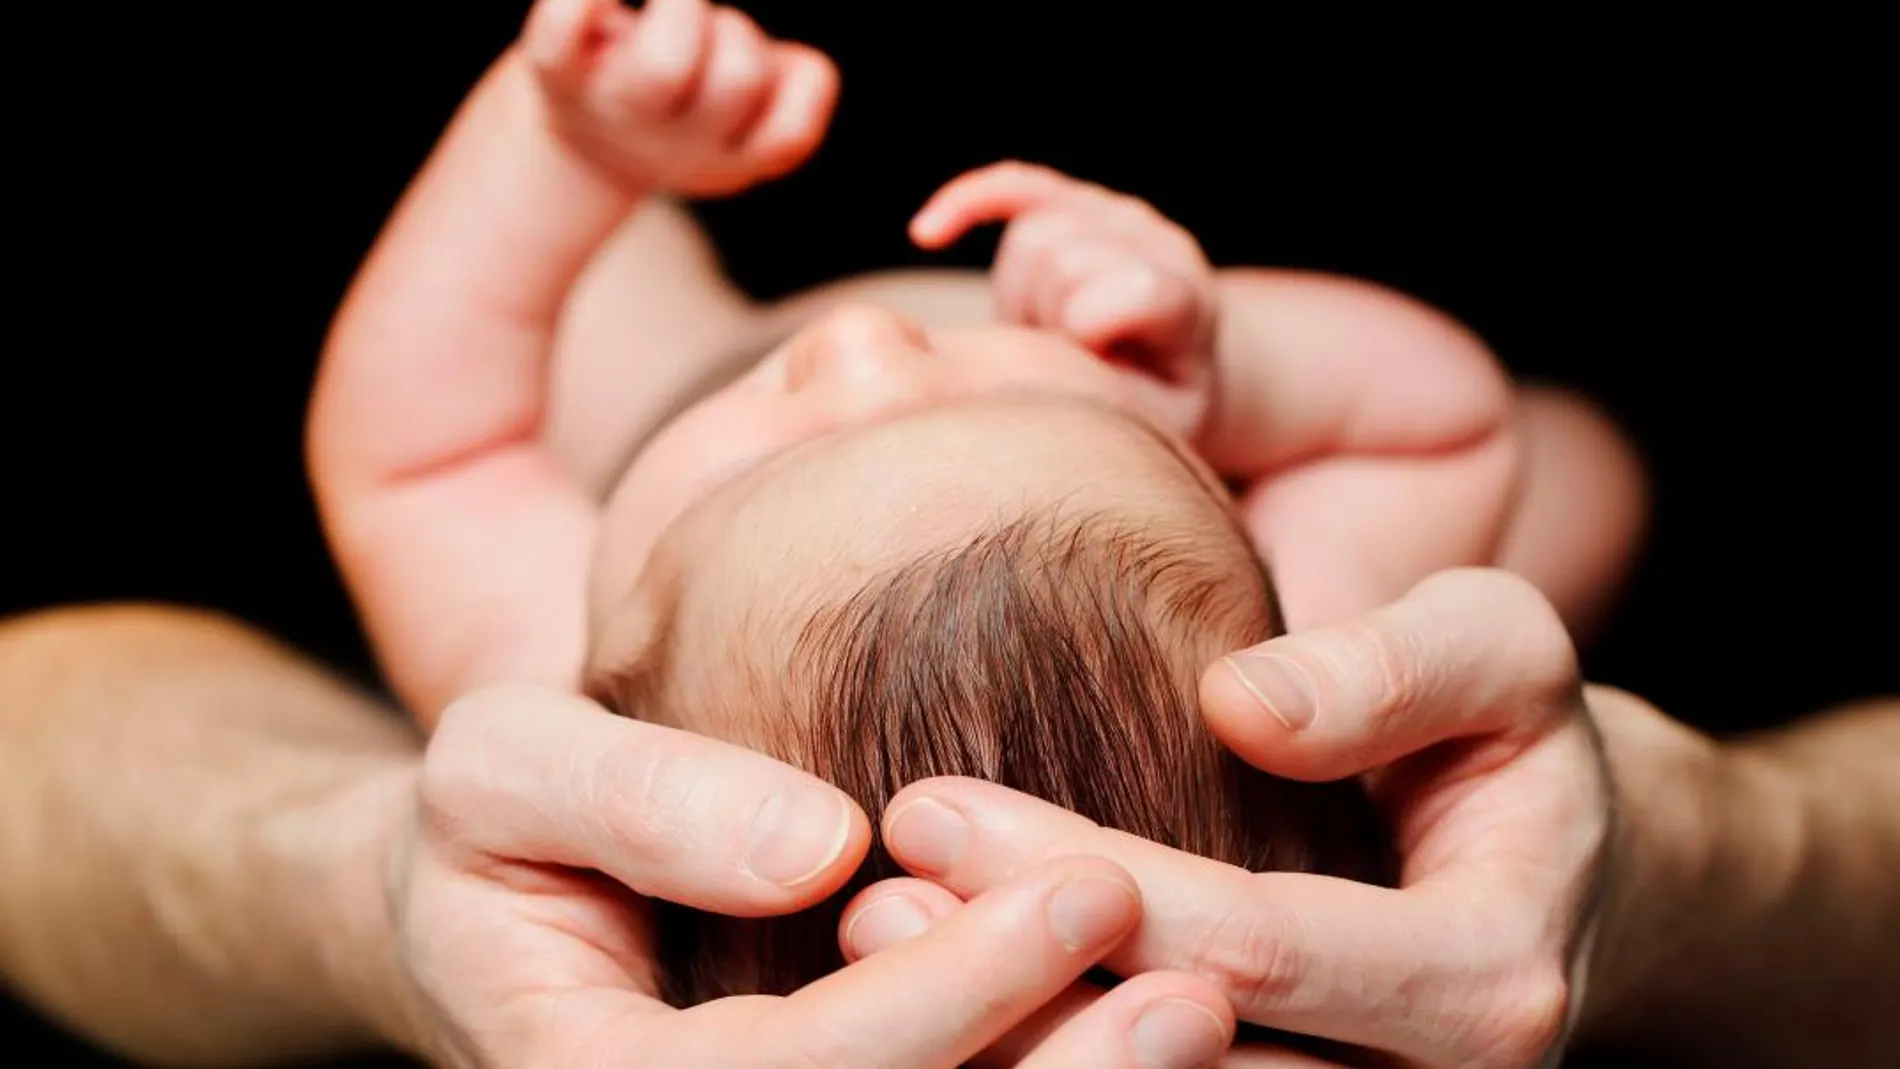 Nacer en casa otorga a los bebés una flora intestinal más fuerte que les potencia el sistema inmunológico y el metabolismo en las primeras semanas de vida, según una investigación